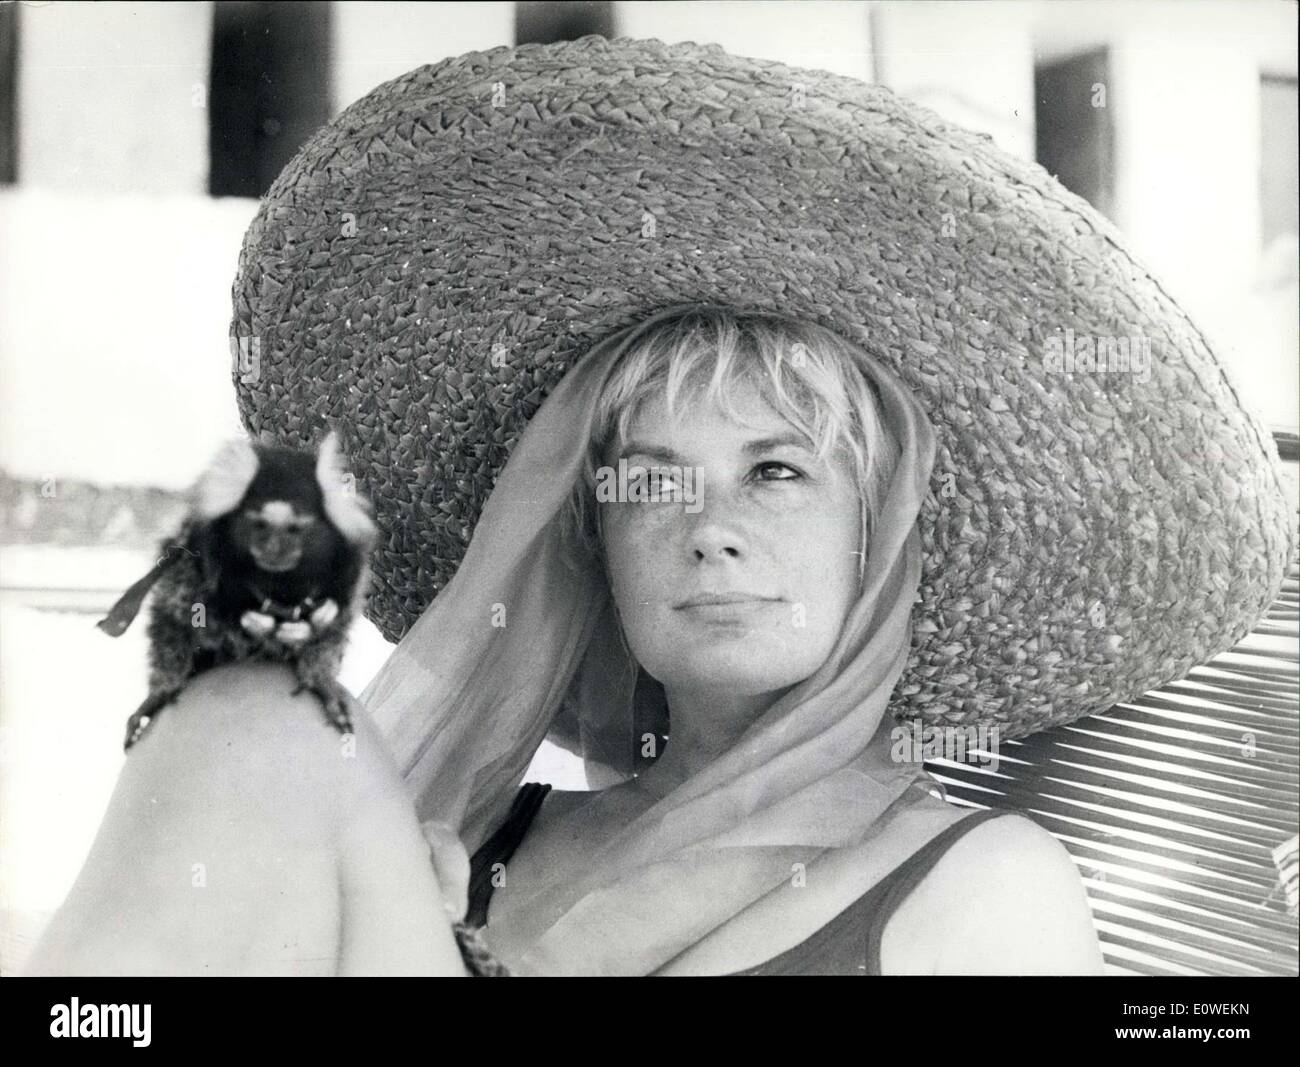 Juillet 26, 1962 - Jacqueline Periux l'actrice française connue en France comme la plus belle ''legu de France'' arrivent à Taormine pour le Festival de cinéma. Elle espère être découvert par certains producteurs de faire des films en Italie Banque D'Images